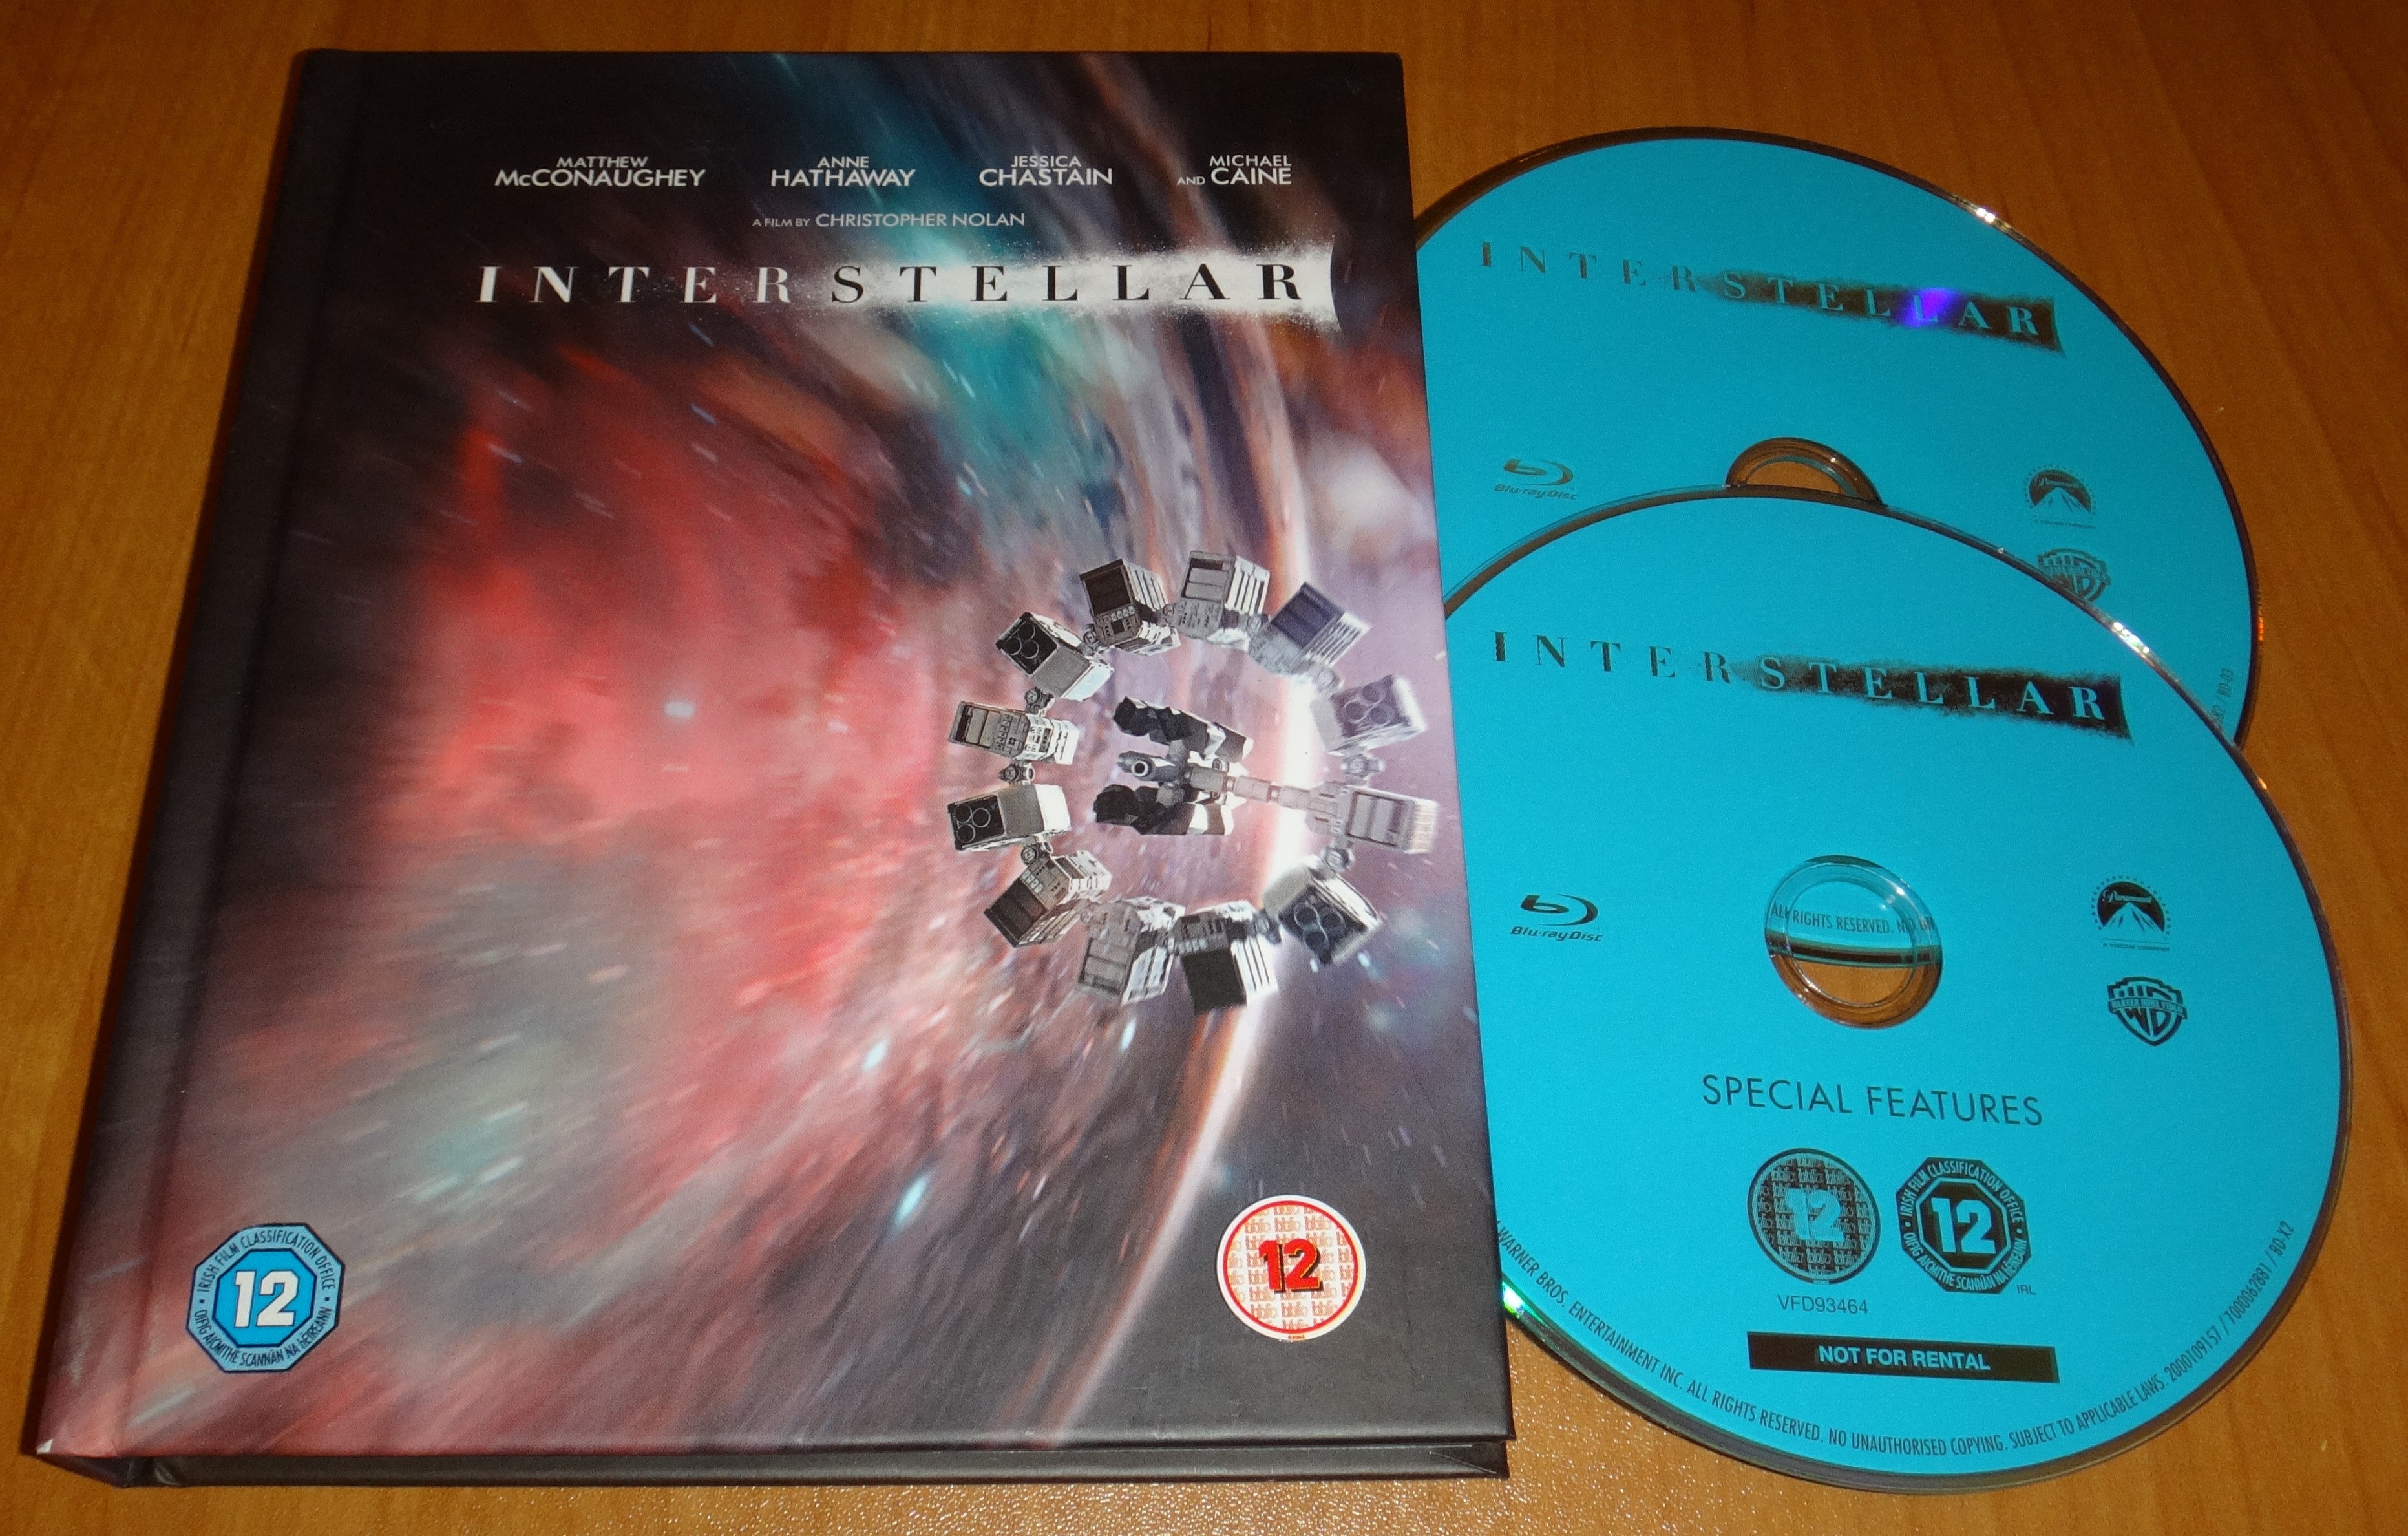 InterstellarDigibook.jpg